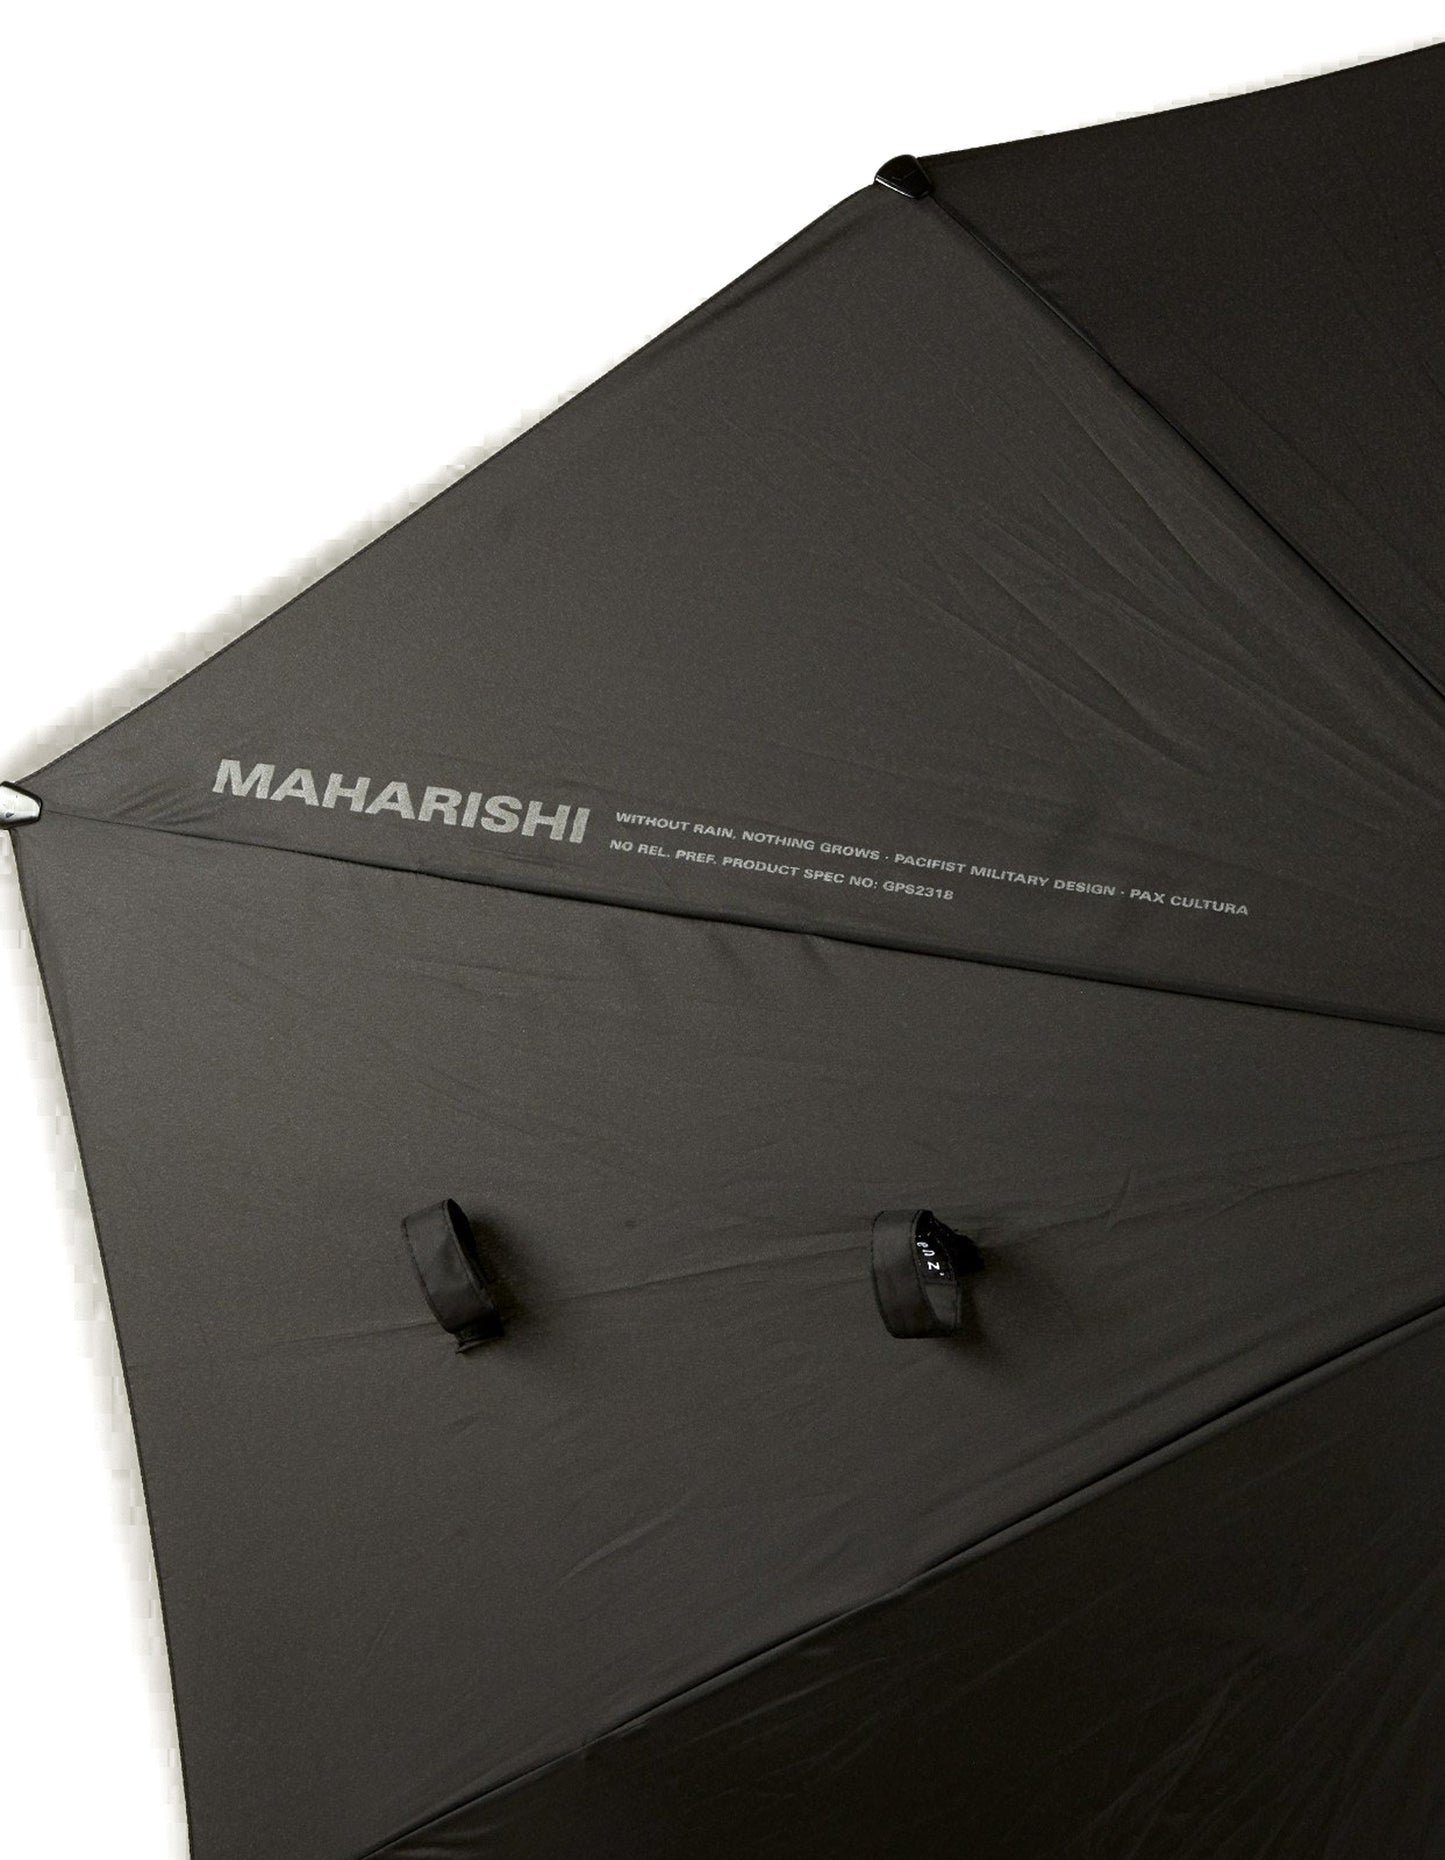 Maharishi Senz° Original Umbrella